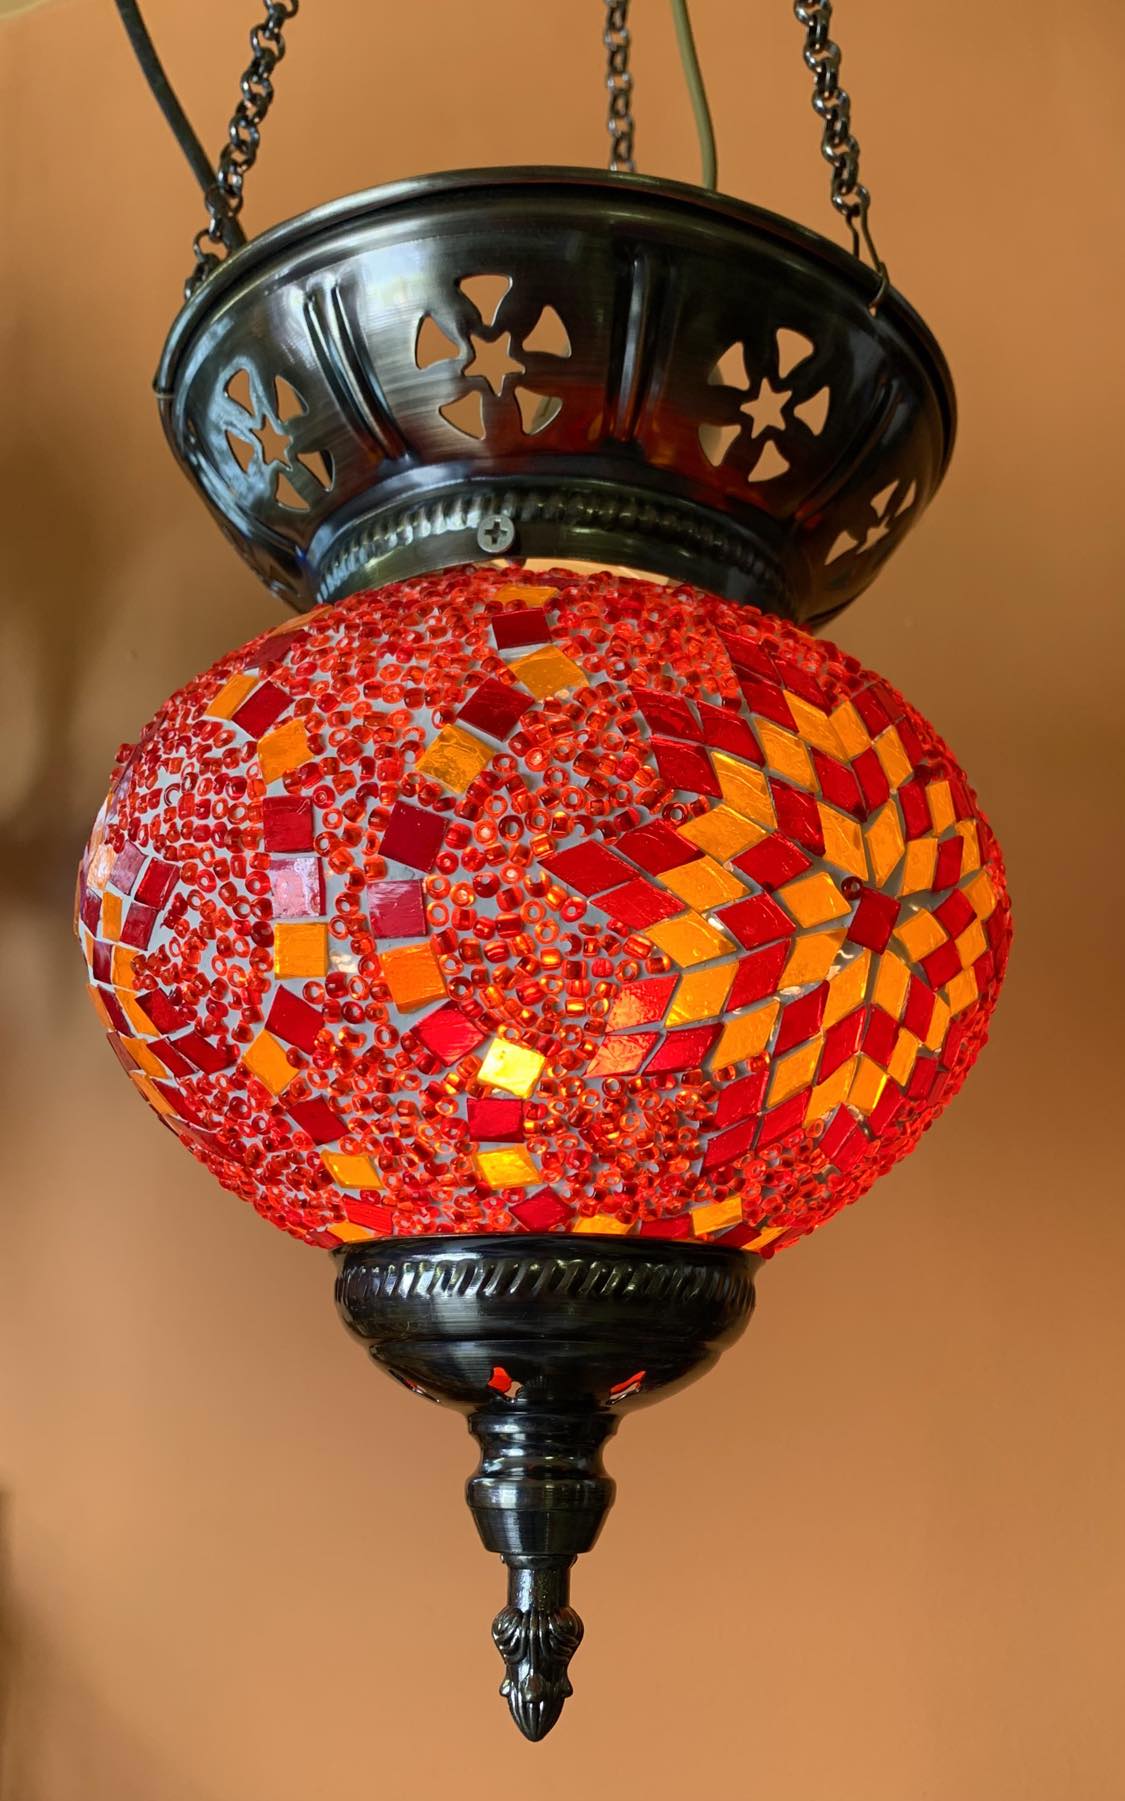 Turkish Mosaic Hanging Lantern - Large